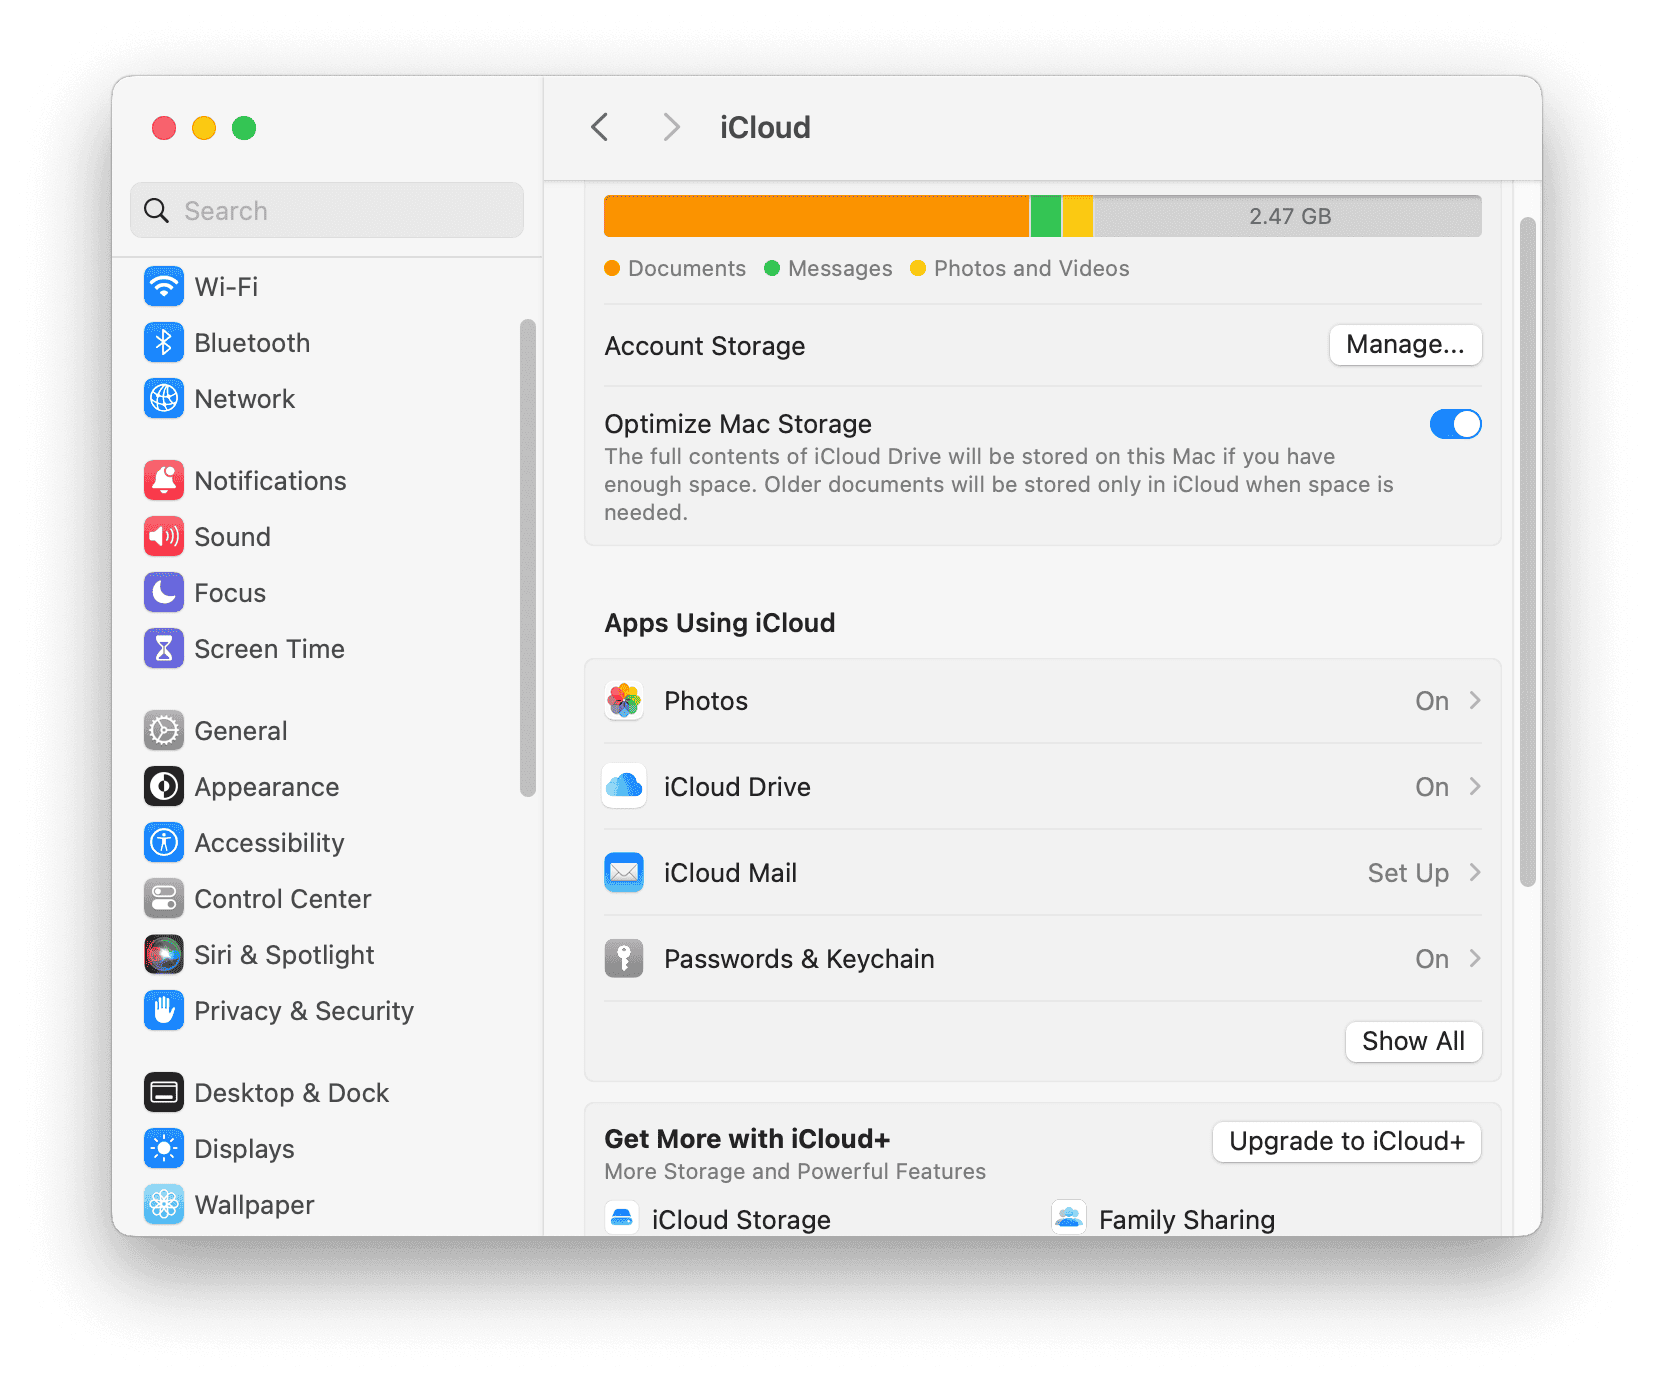 Optimize Mac Storage in Settings